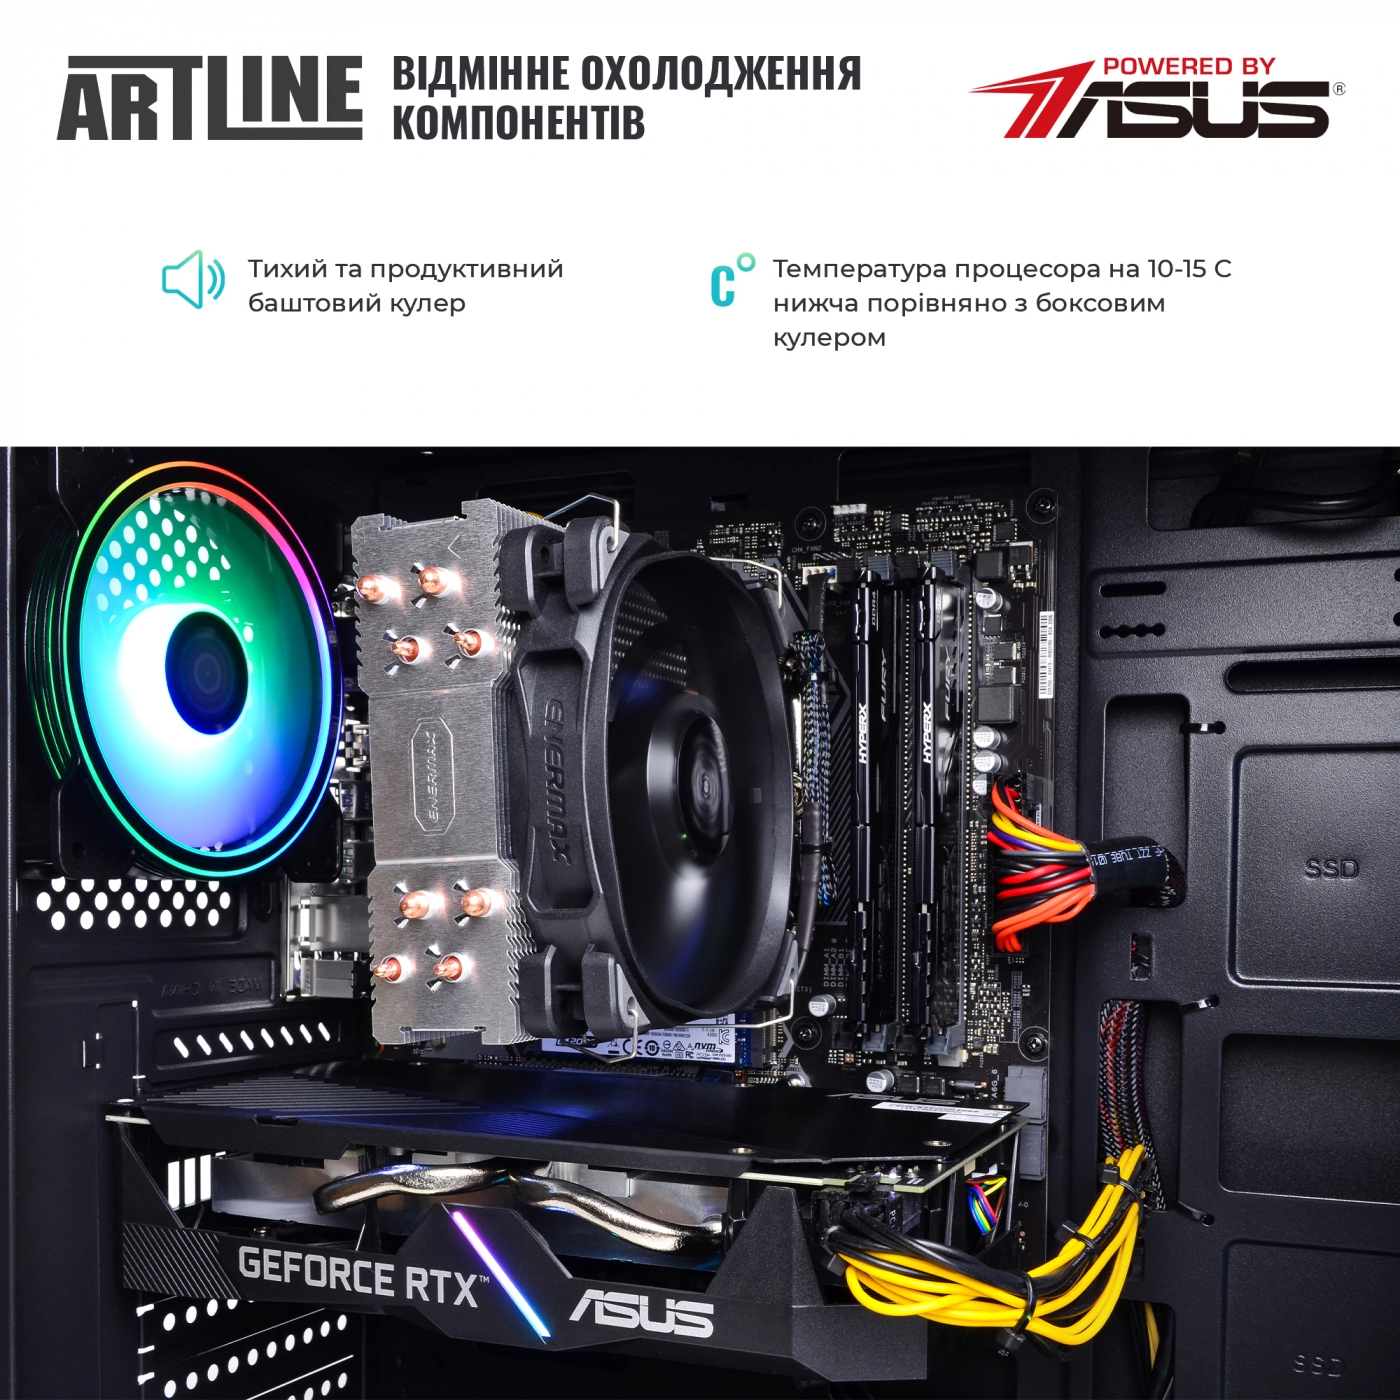 Купить Компьютер ARTLINE Gaming X68v11 - фото 8